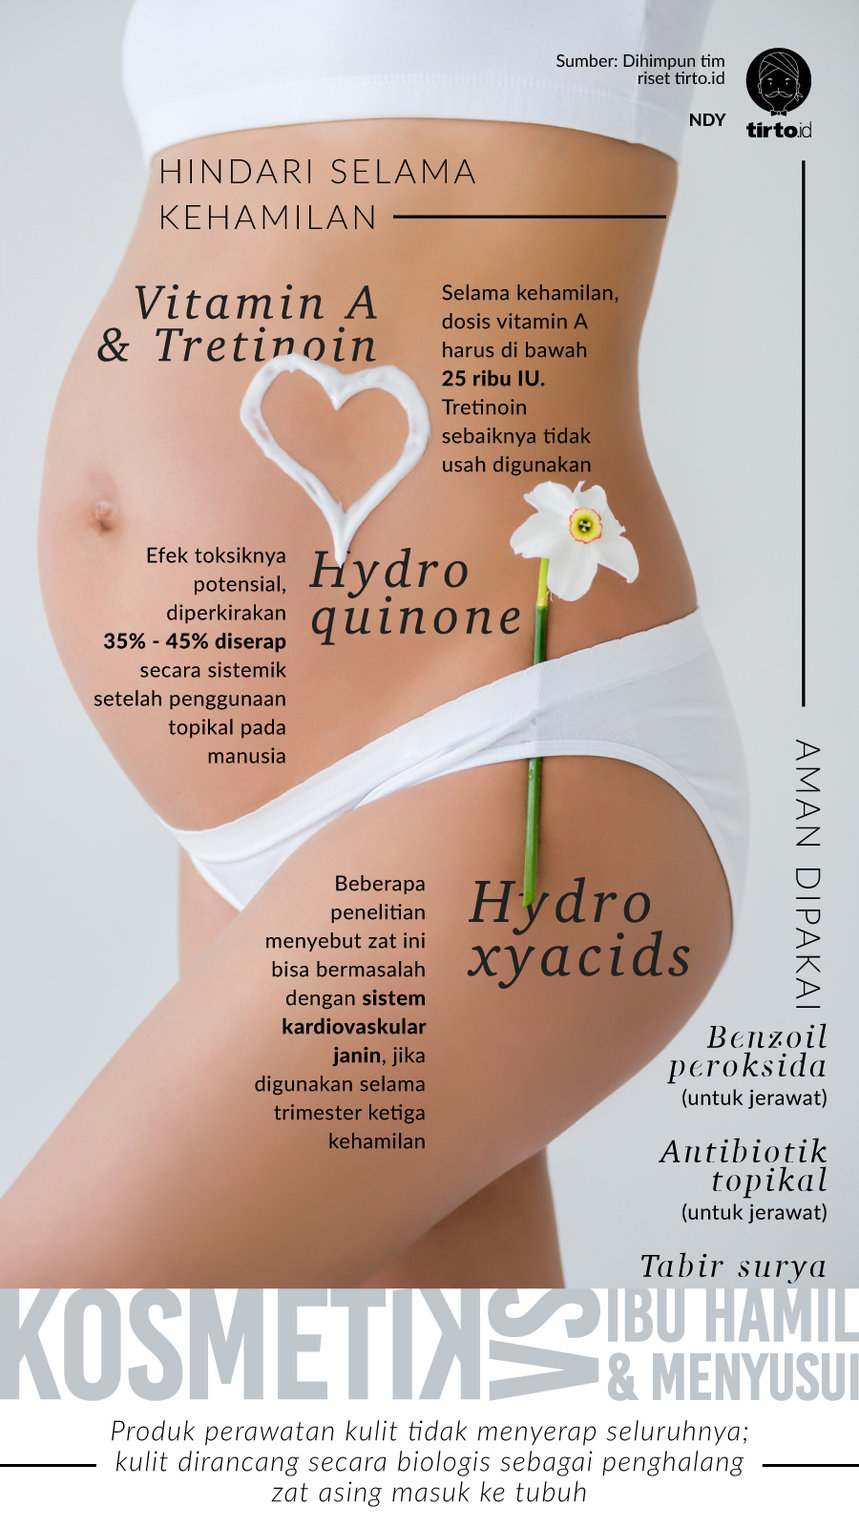 Infografik Kosmetik VS ibu hamil menyusui